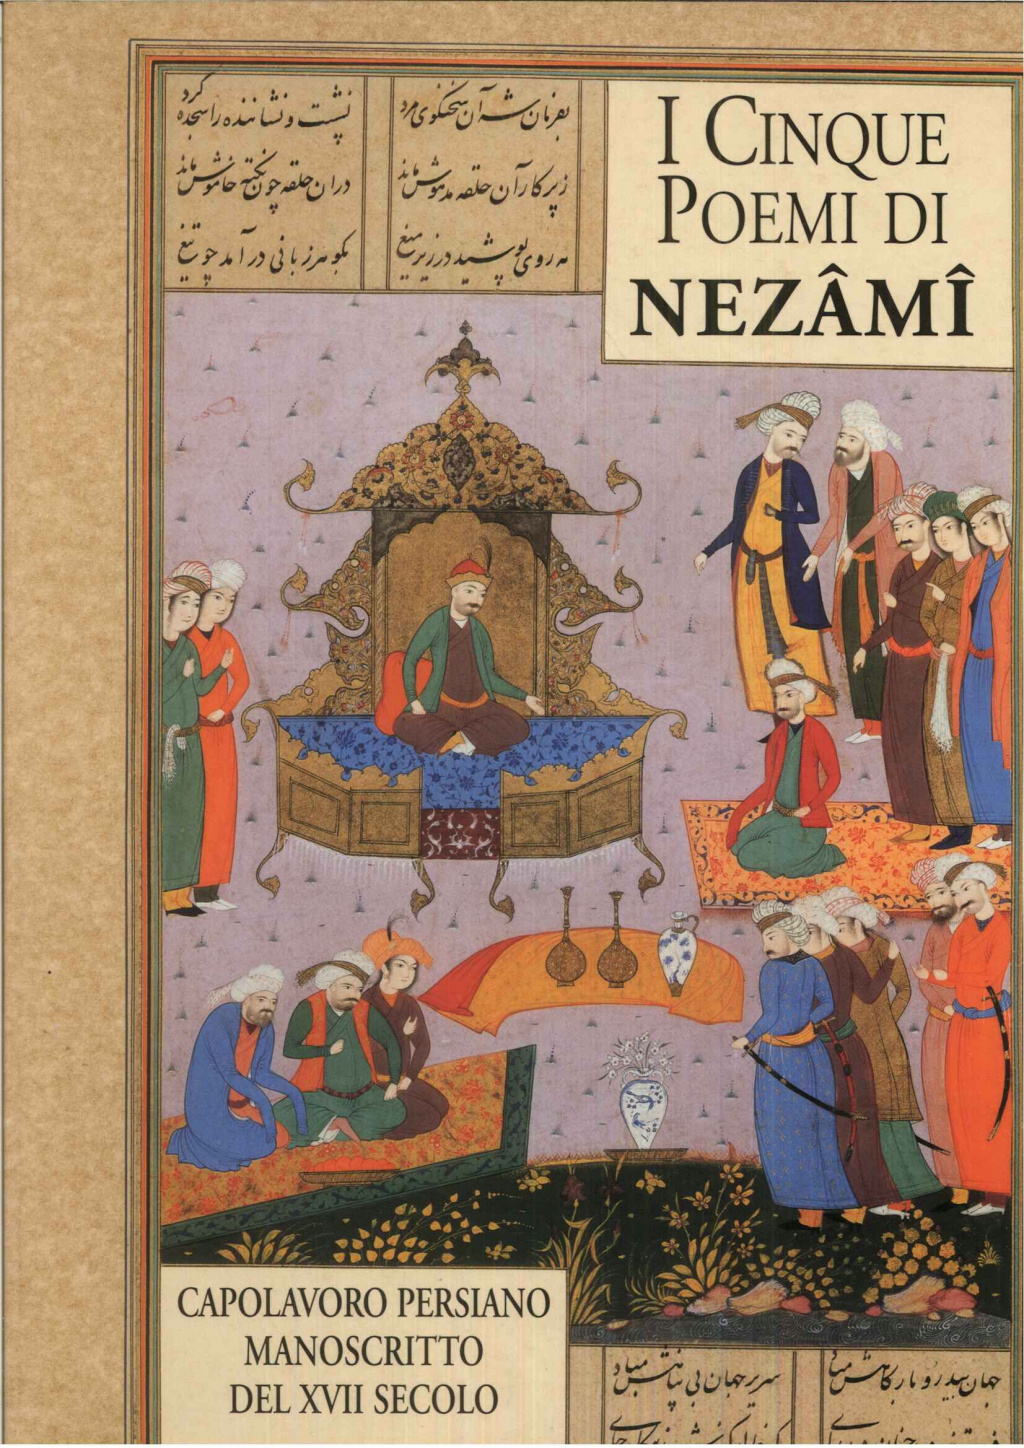 I cinque poemi di Nezami. Capolavoro persiano del XVII secolo